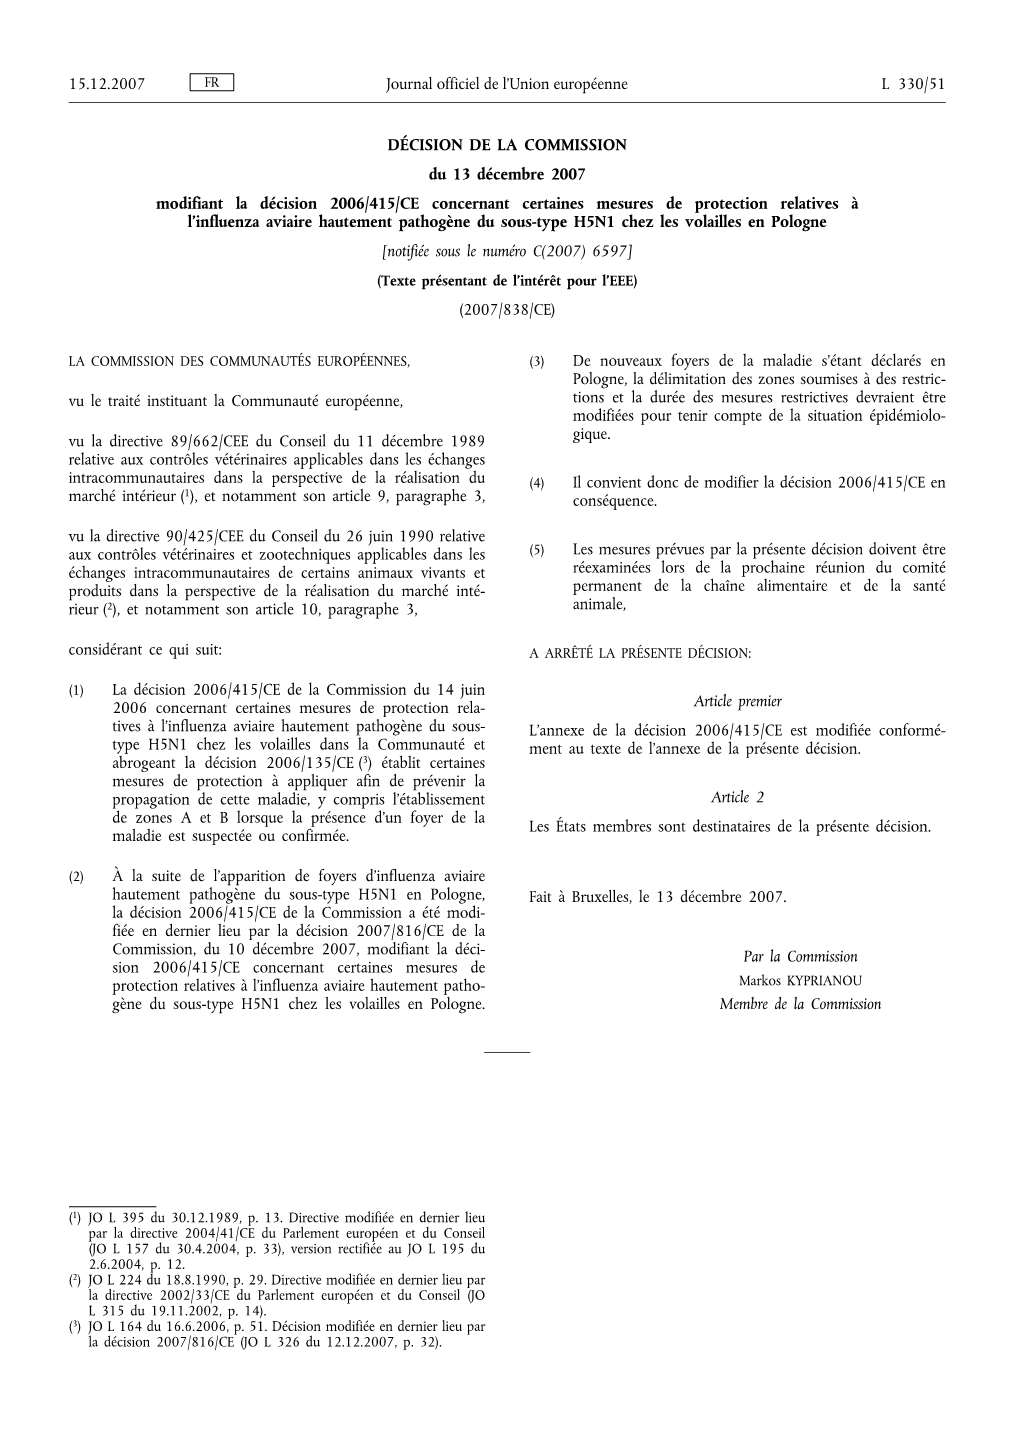 DÉCISION DE LA COMMISSION Du 13 Décembre 2007 Modifiant La